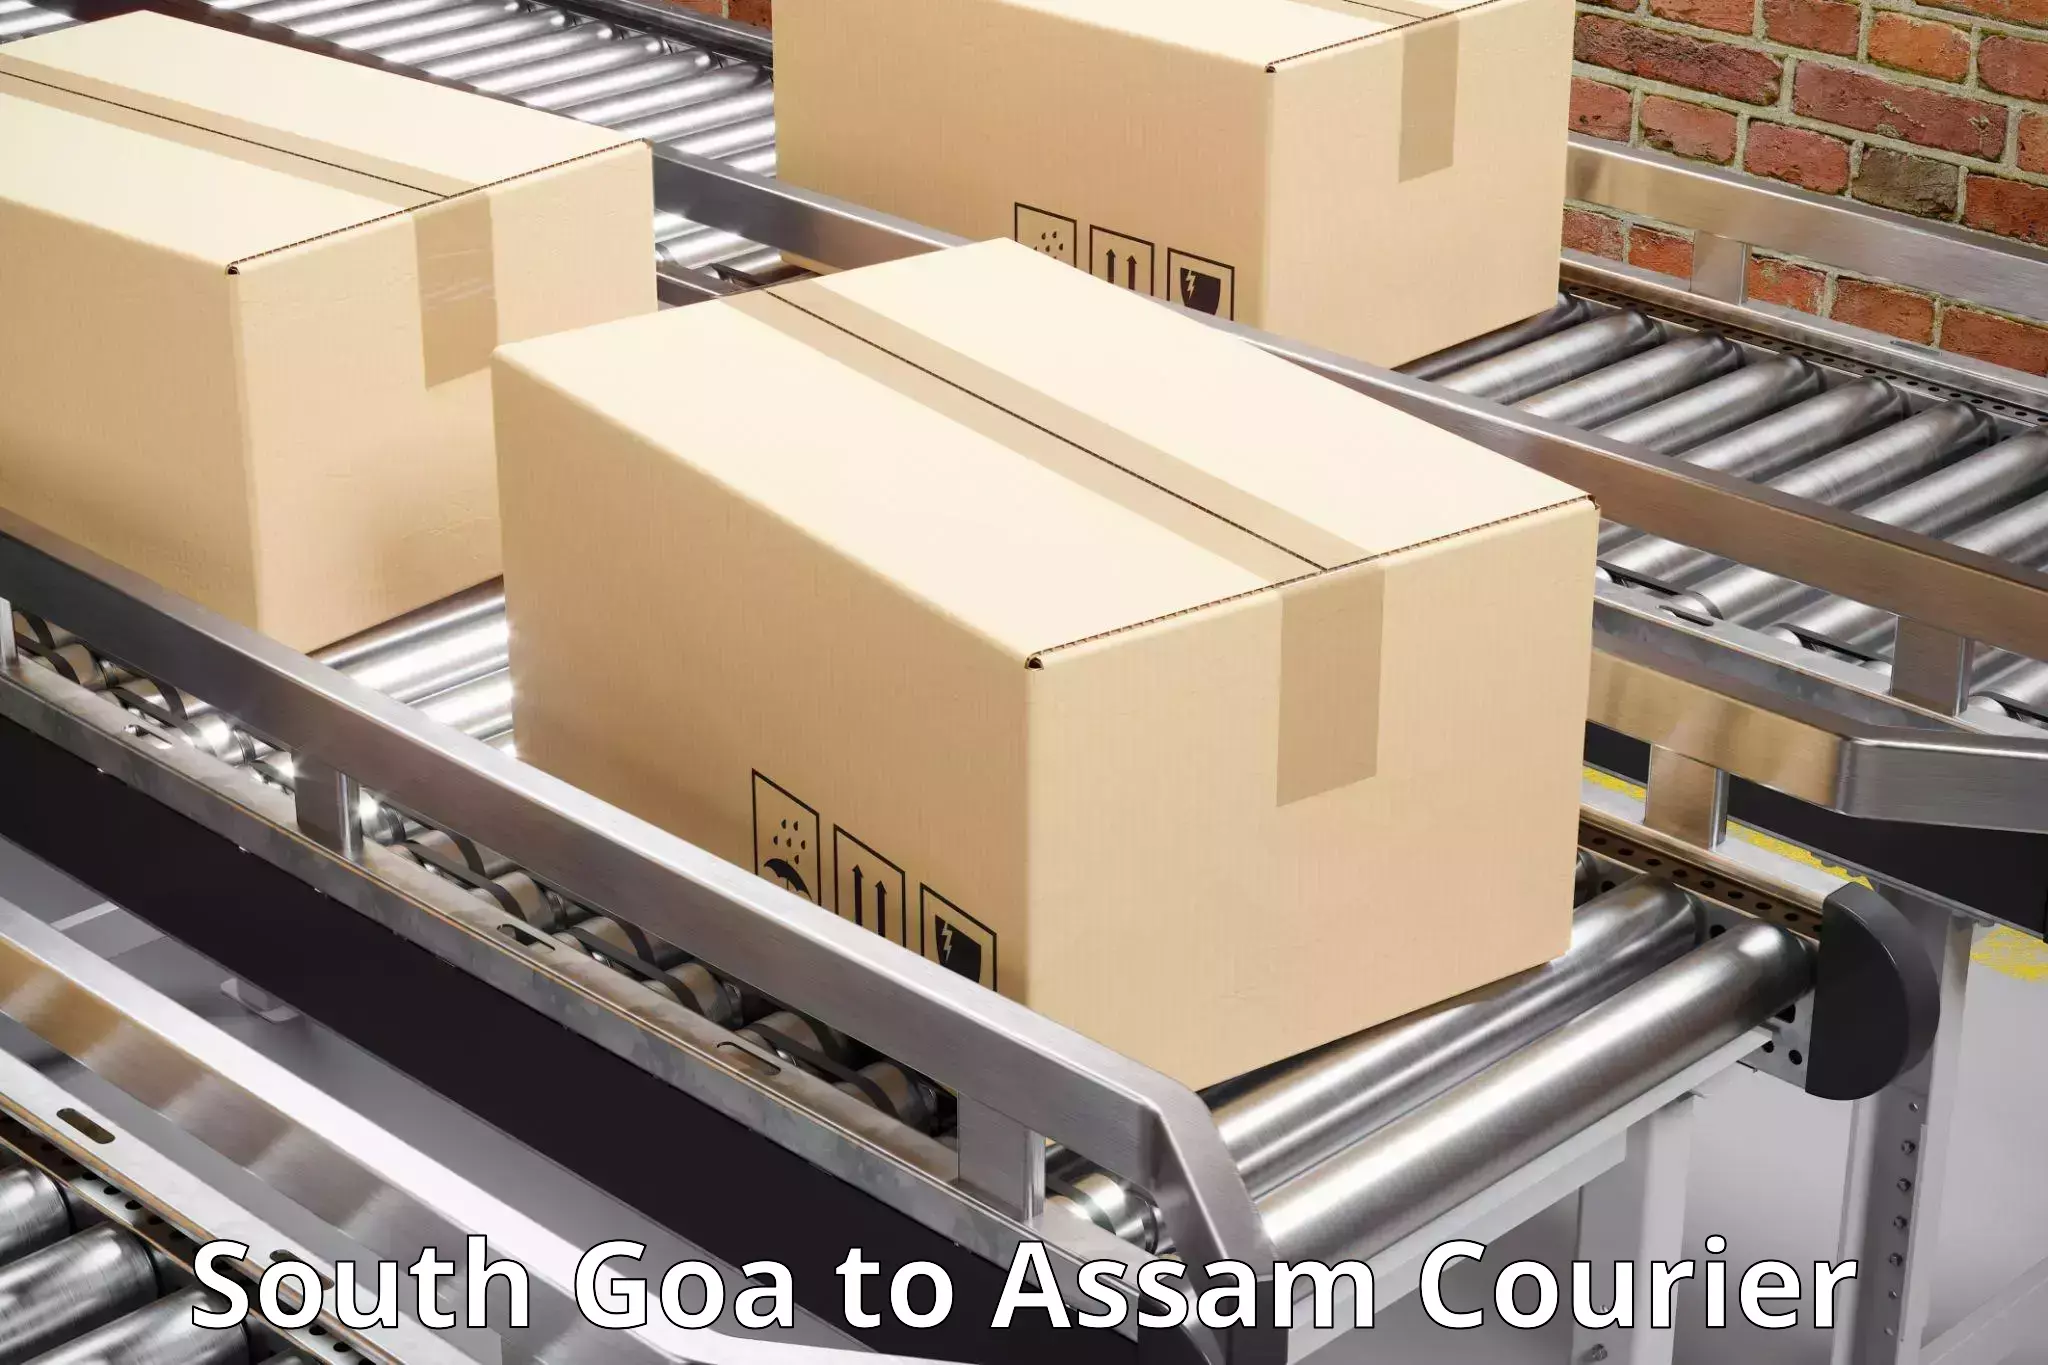 Door-to-door freight service South Goa to Kamrup